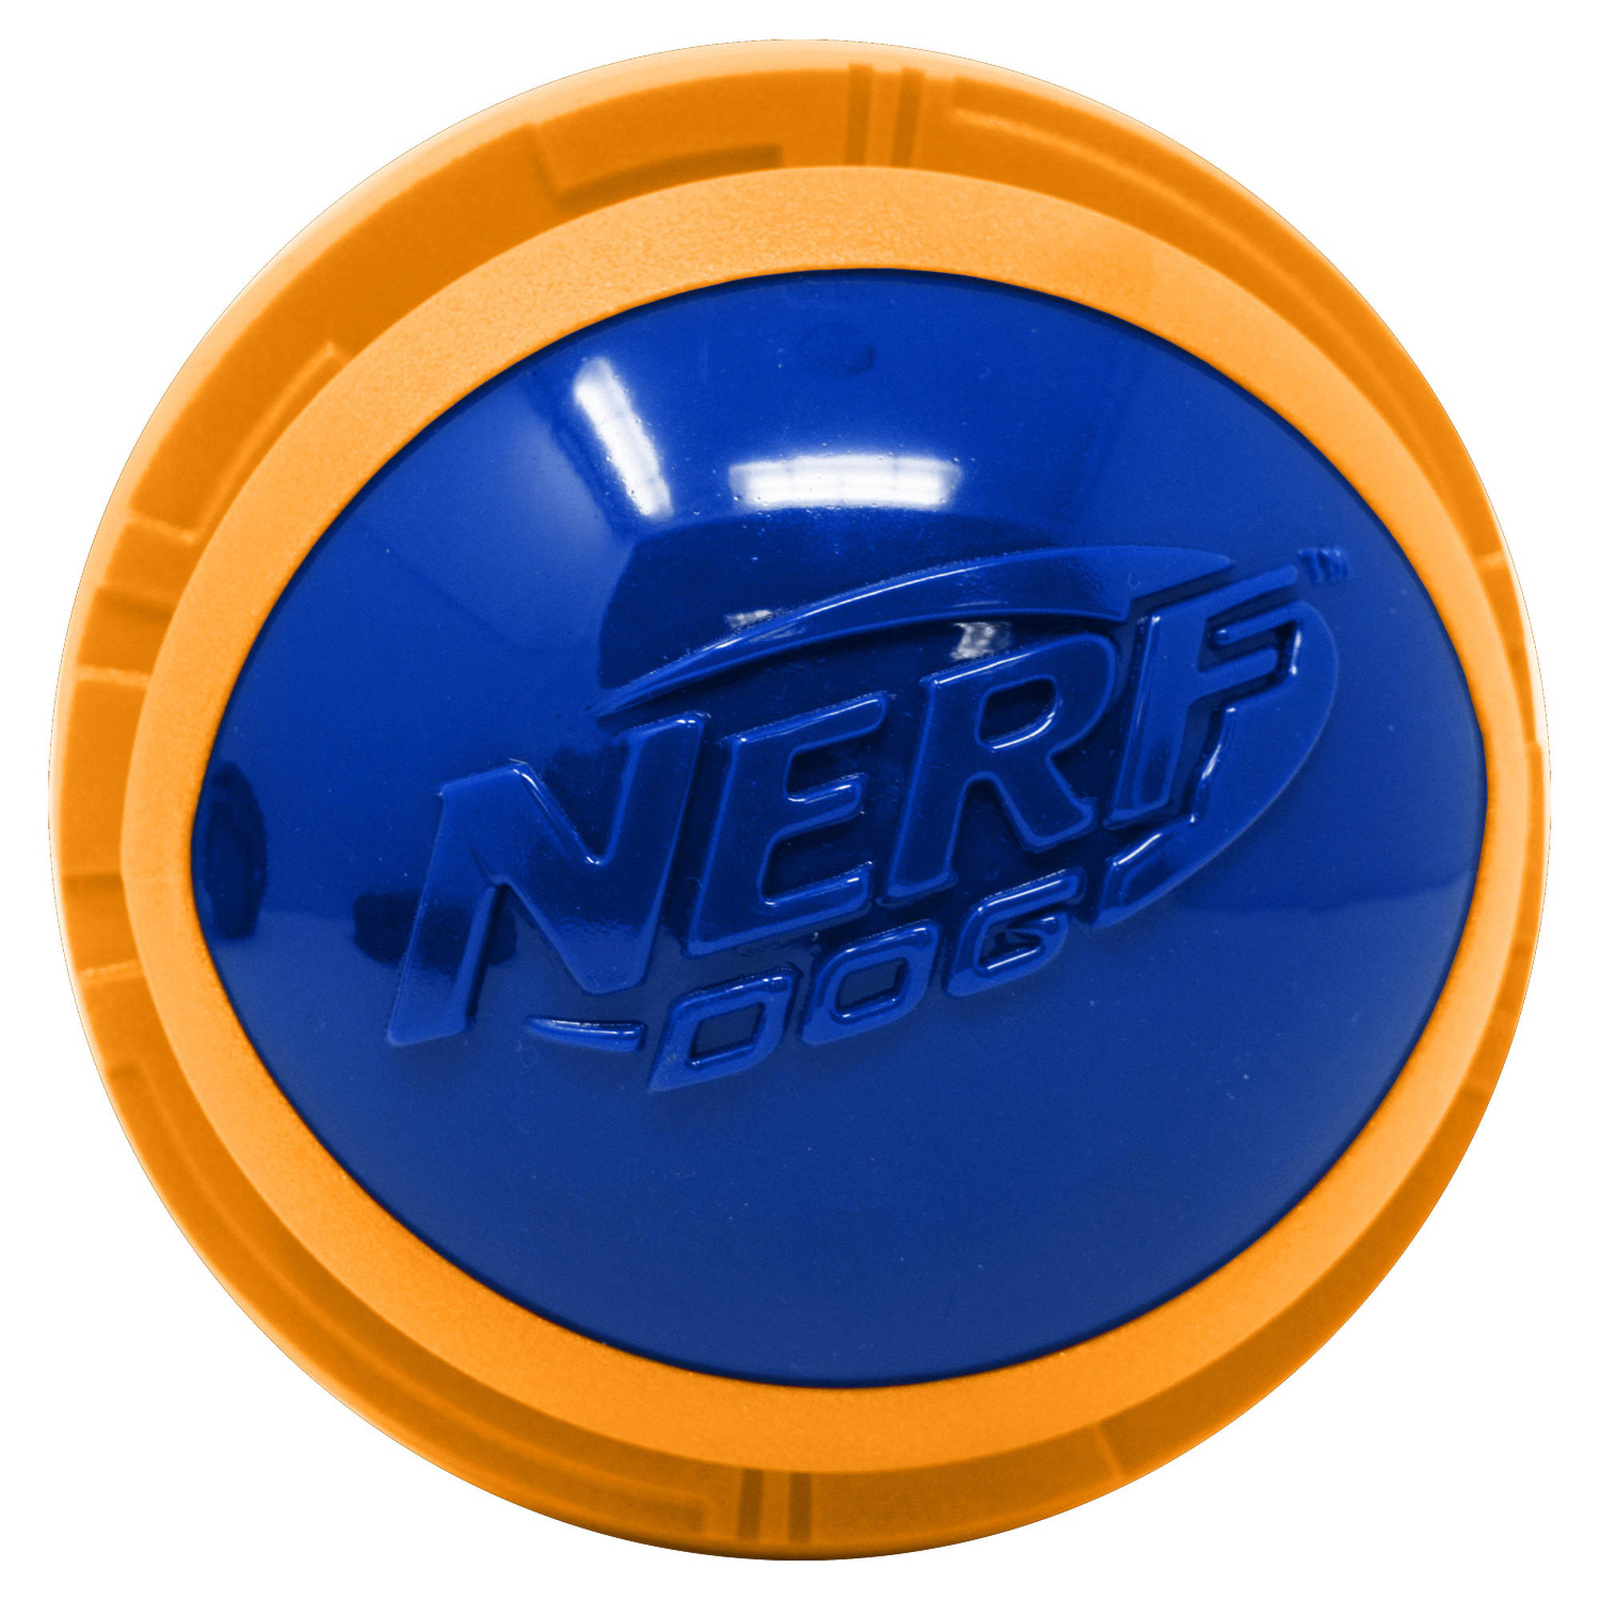 Nerf Nerf мяч из вспененной резины и термопластичной резины, 10 см (серия Мегатон), (синий/оранжевый) (380 г) nerf мяч для регби из термопластичной резины 18 см серия мегатон синийоранжевый 53957 0 254 кг 57276 1 шт